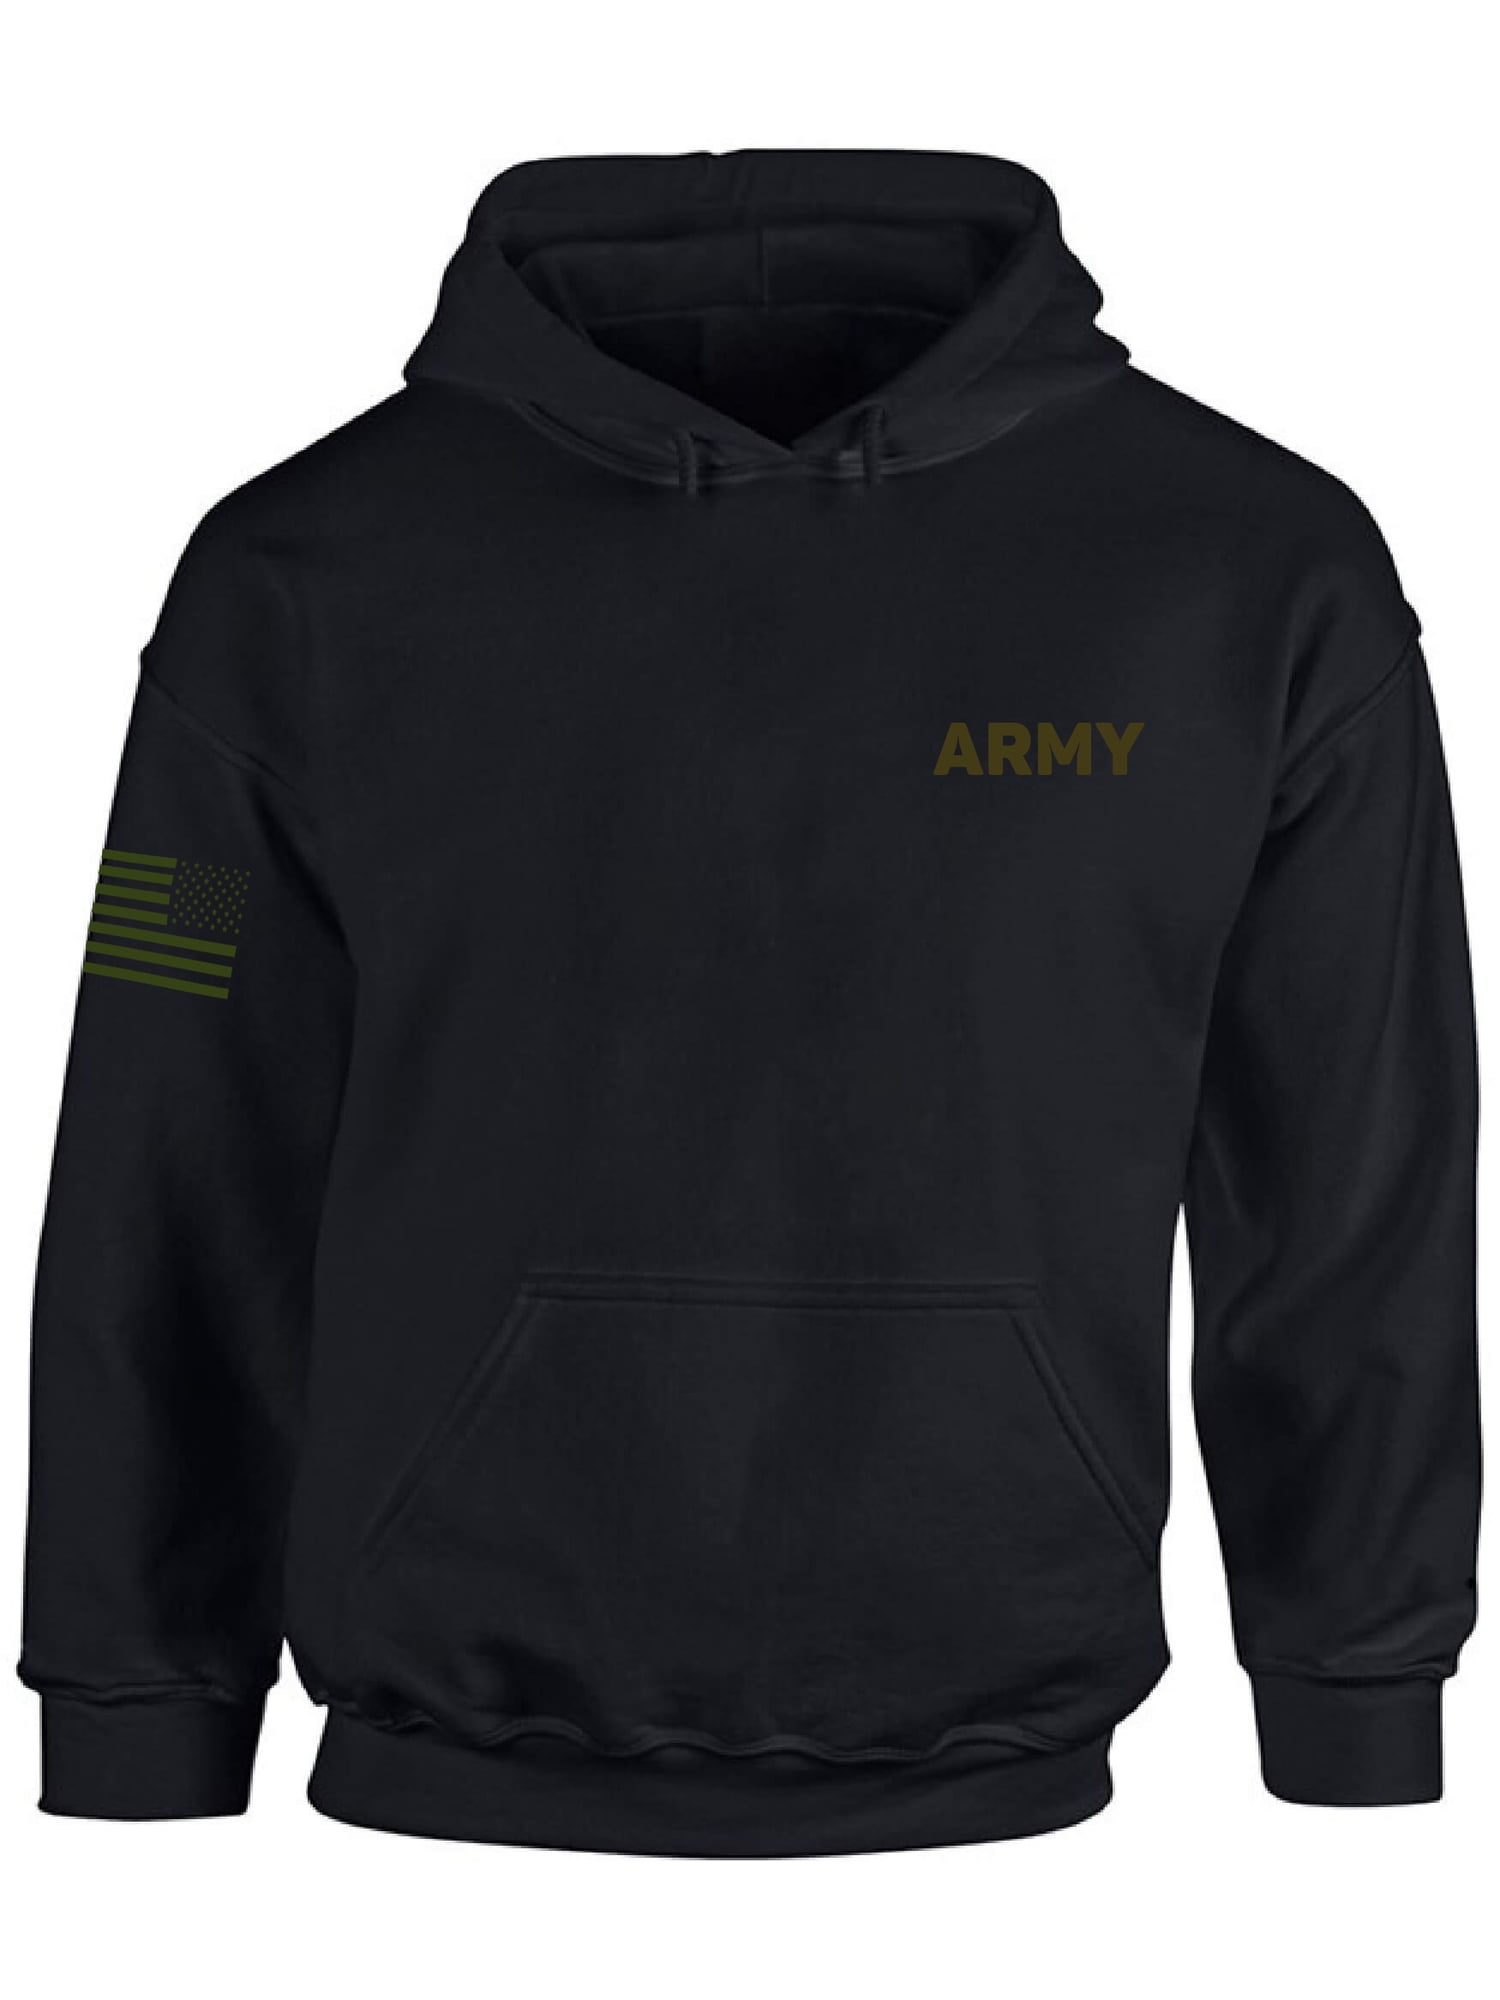 army patriots hoodie